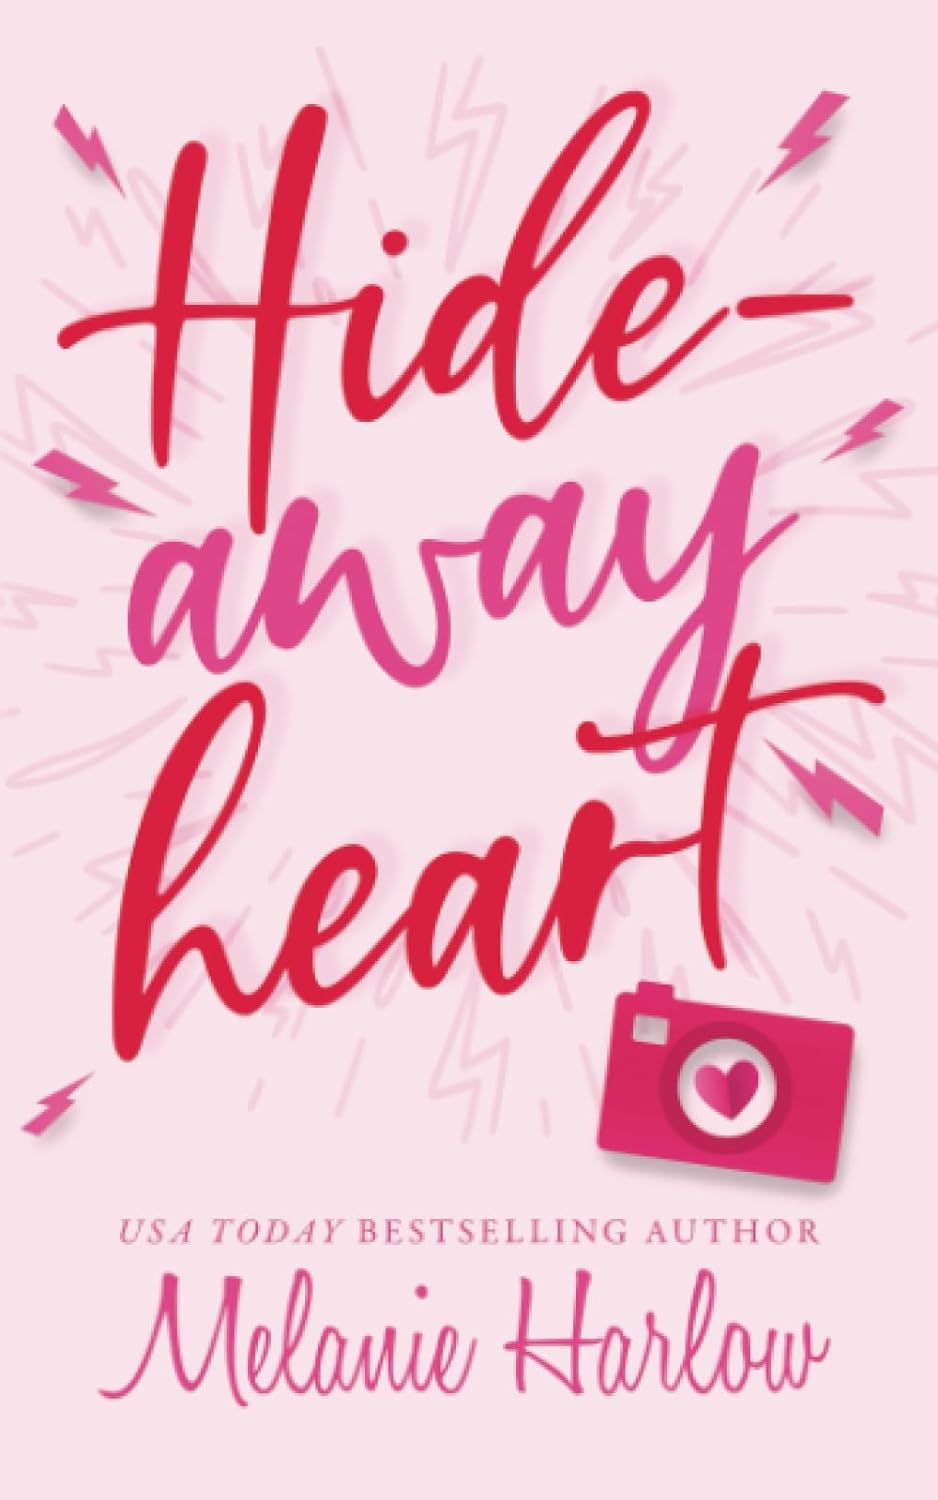 Hideaway Heart - Melanie Harlow